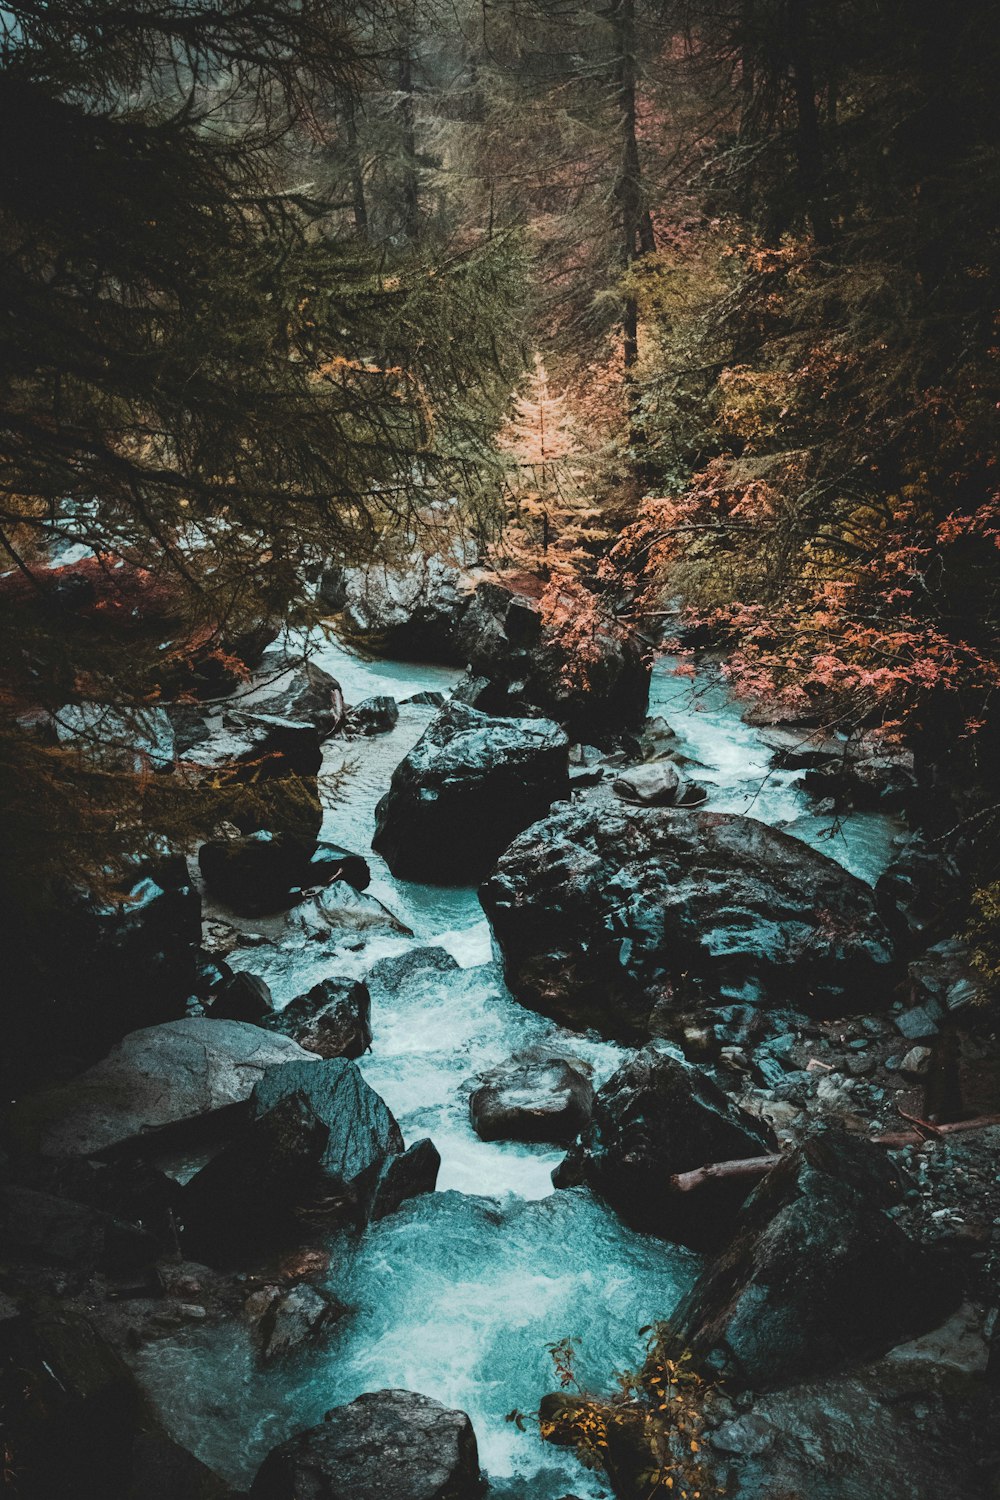 rocce grigie nel fiume tra gli alberi